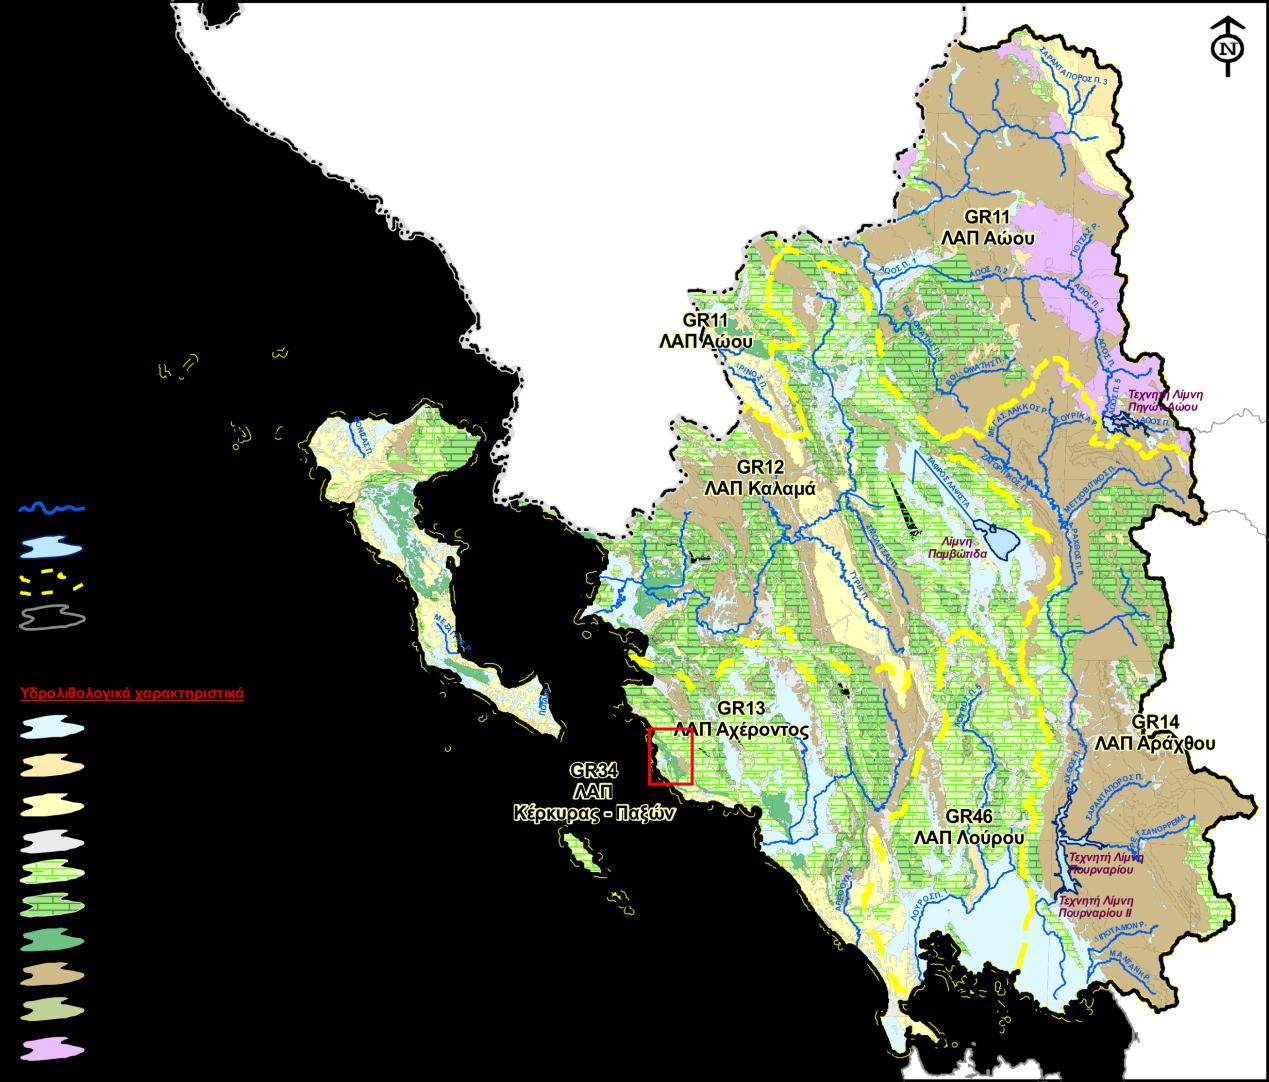 Σχήμα 2.3: Υδρολιθολογικός χάρτης Υδατικού Διαμερίσματος Ηπείρου (Σχέδιο Διαχείρισης των Λεκανών Απορροής Ποταμών του Υδατικού Διαμερίσματος Ηπείρου, 2013. ΦΕΚ Β 2292-17.09.2013).